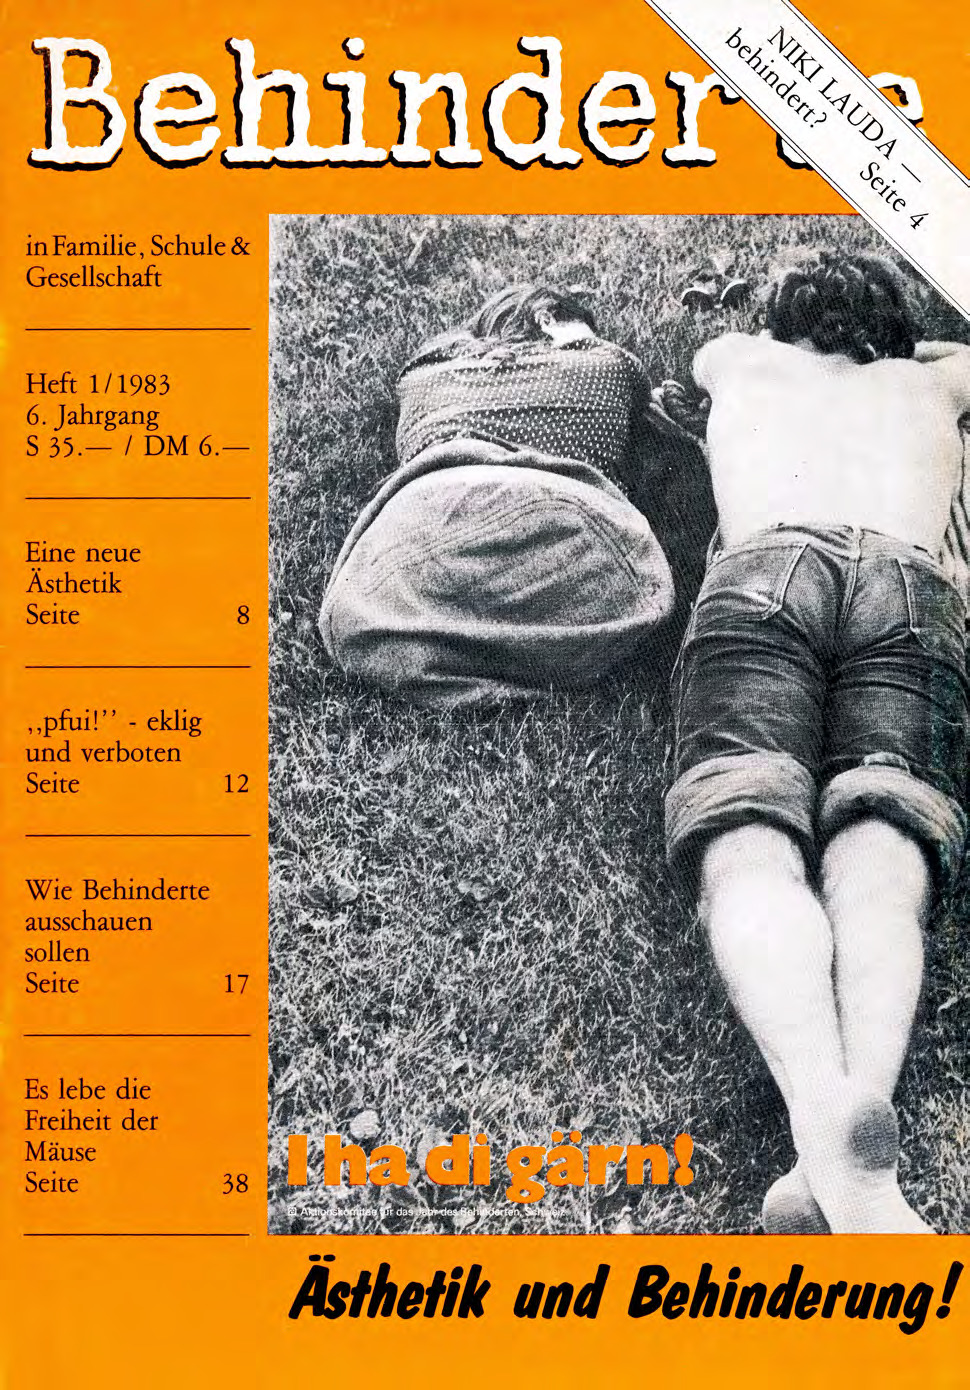 Titelbild der Zeitschrift BEHINDERTE MENSCHEN, Ausgabe 1/1983 "Ästhetik und Behinderung"